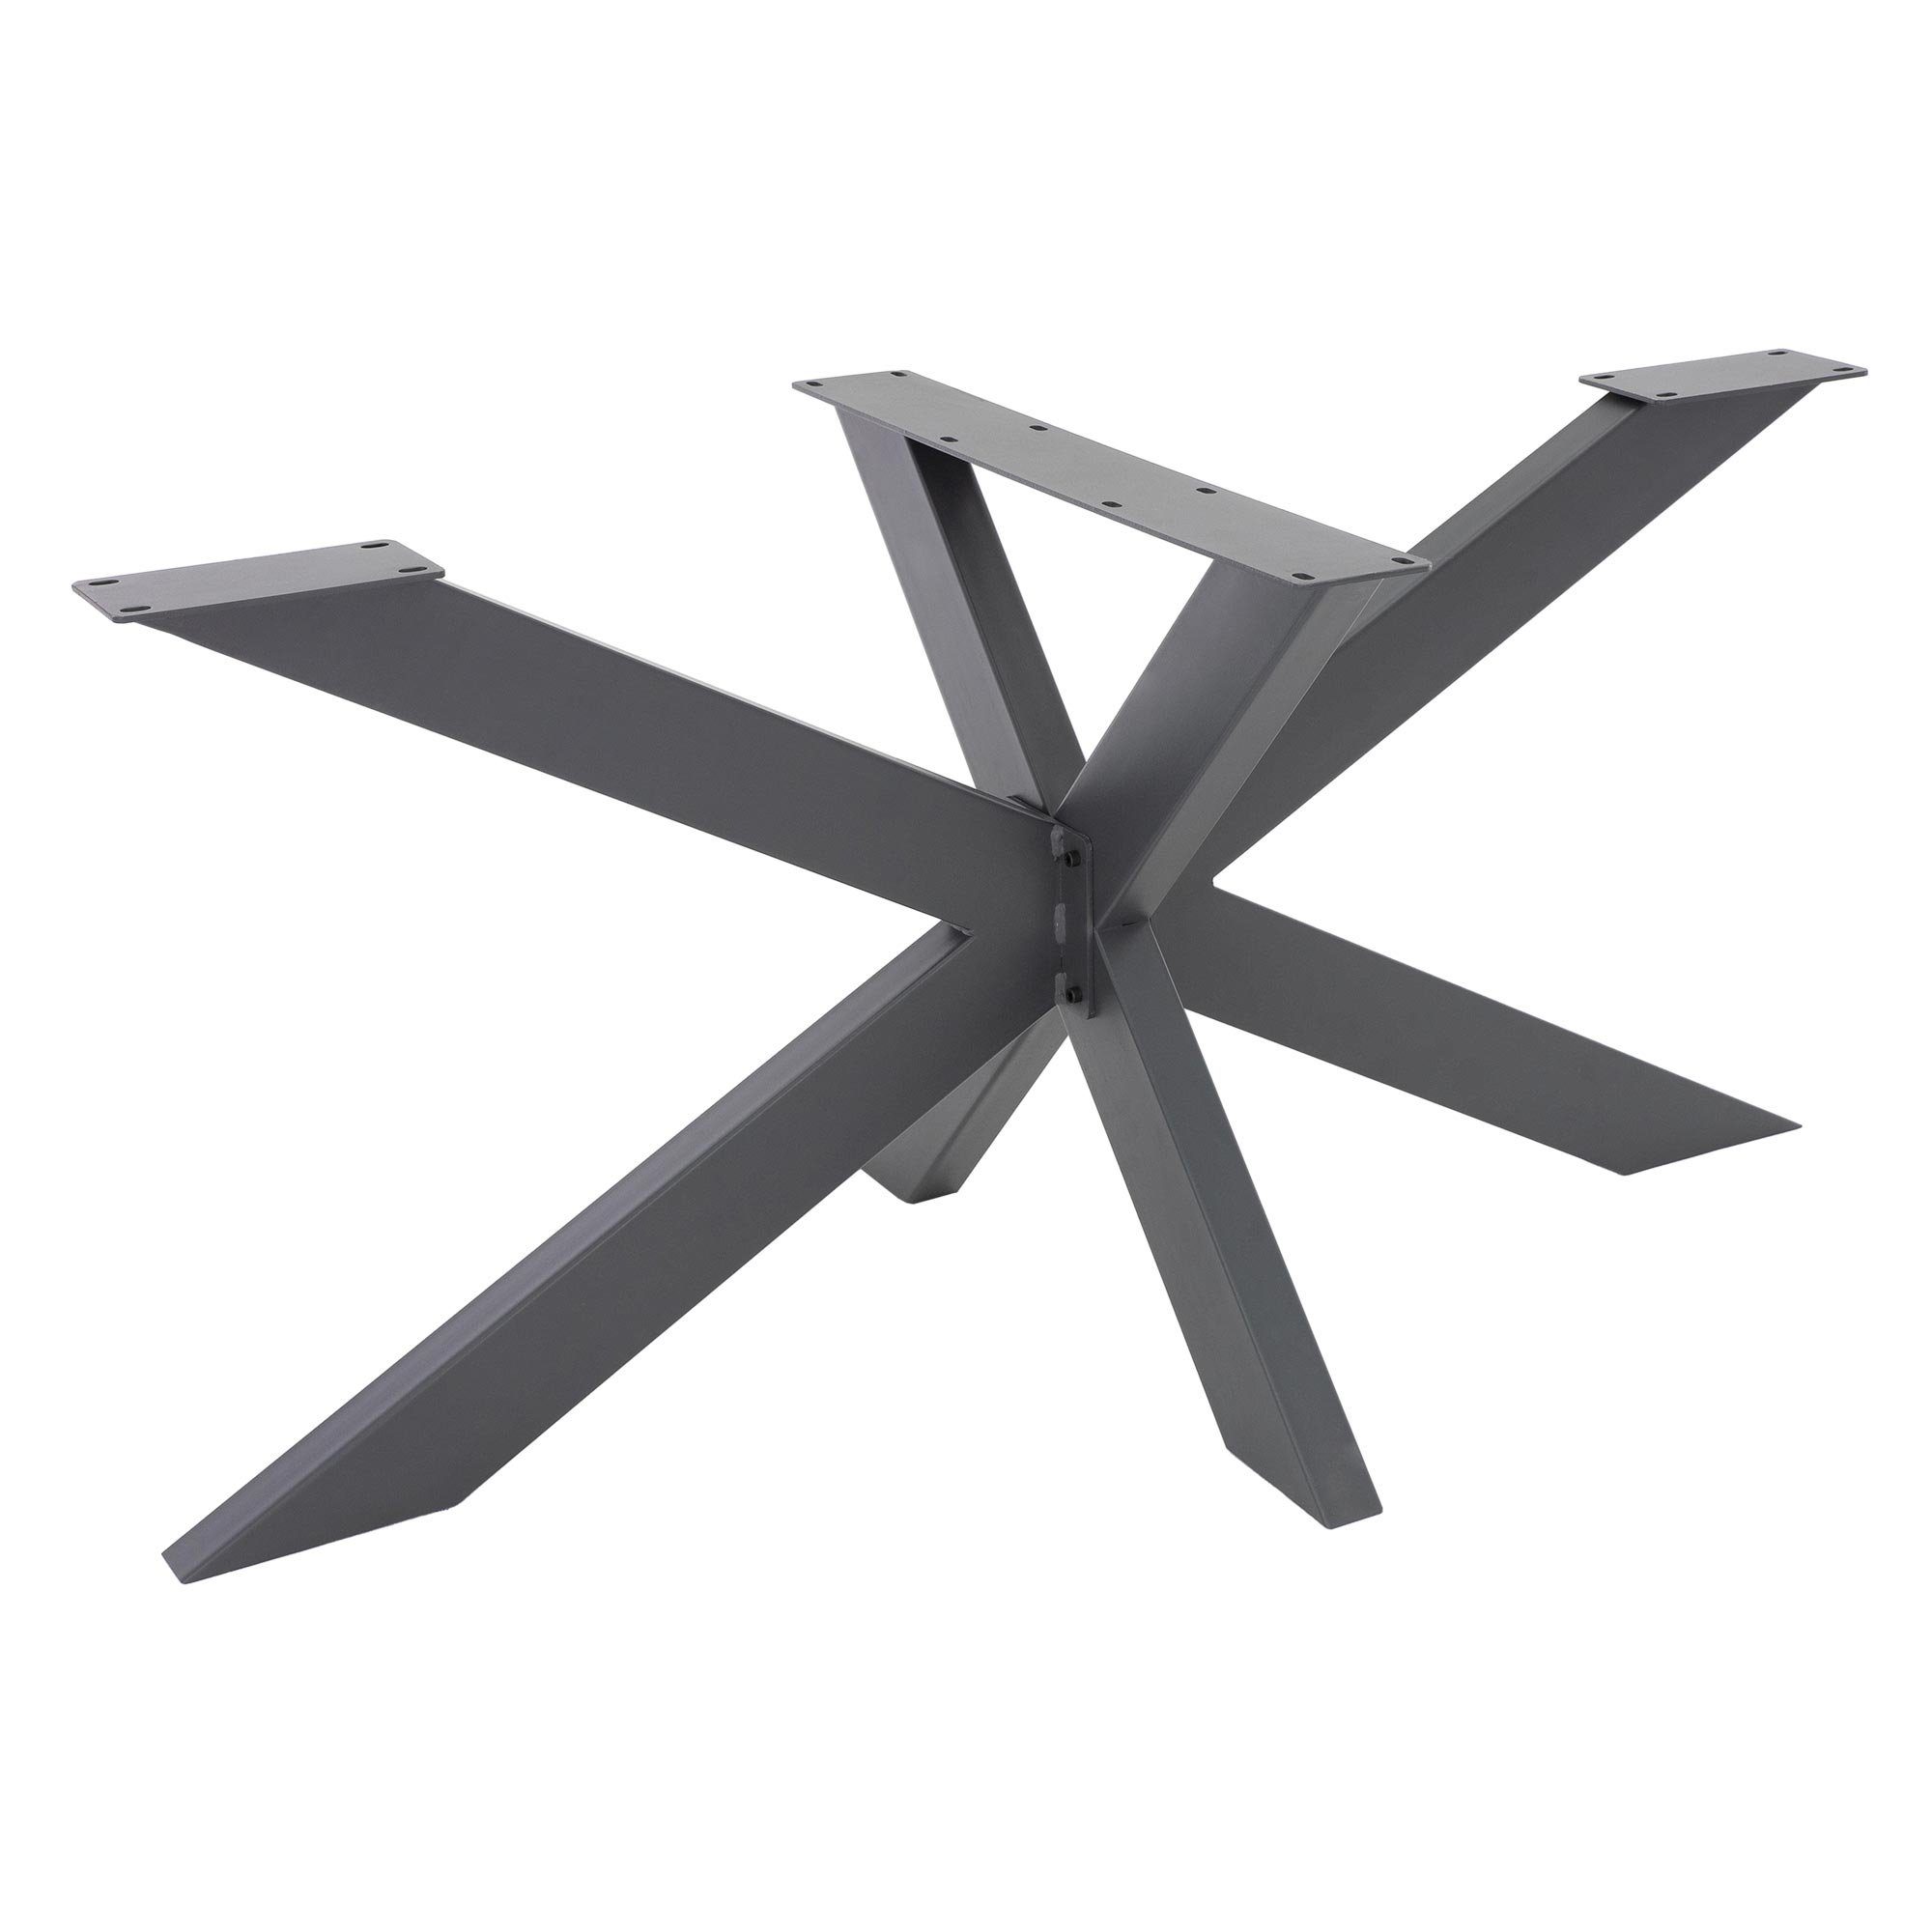 ML-DESIGN Tischbein Tischgestell Spider Kreuzgestell Tischfüße Möbelfüße Tischkufen DIY, Anthrazit 78x71x150cm X-Design Schwerlast Stahl Metall Industriedesign